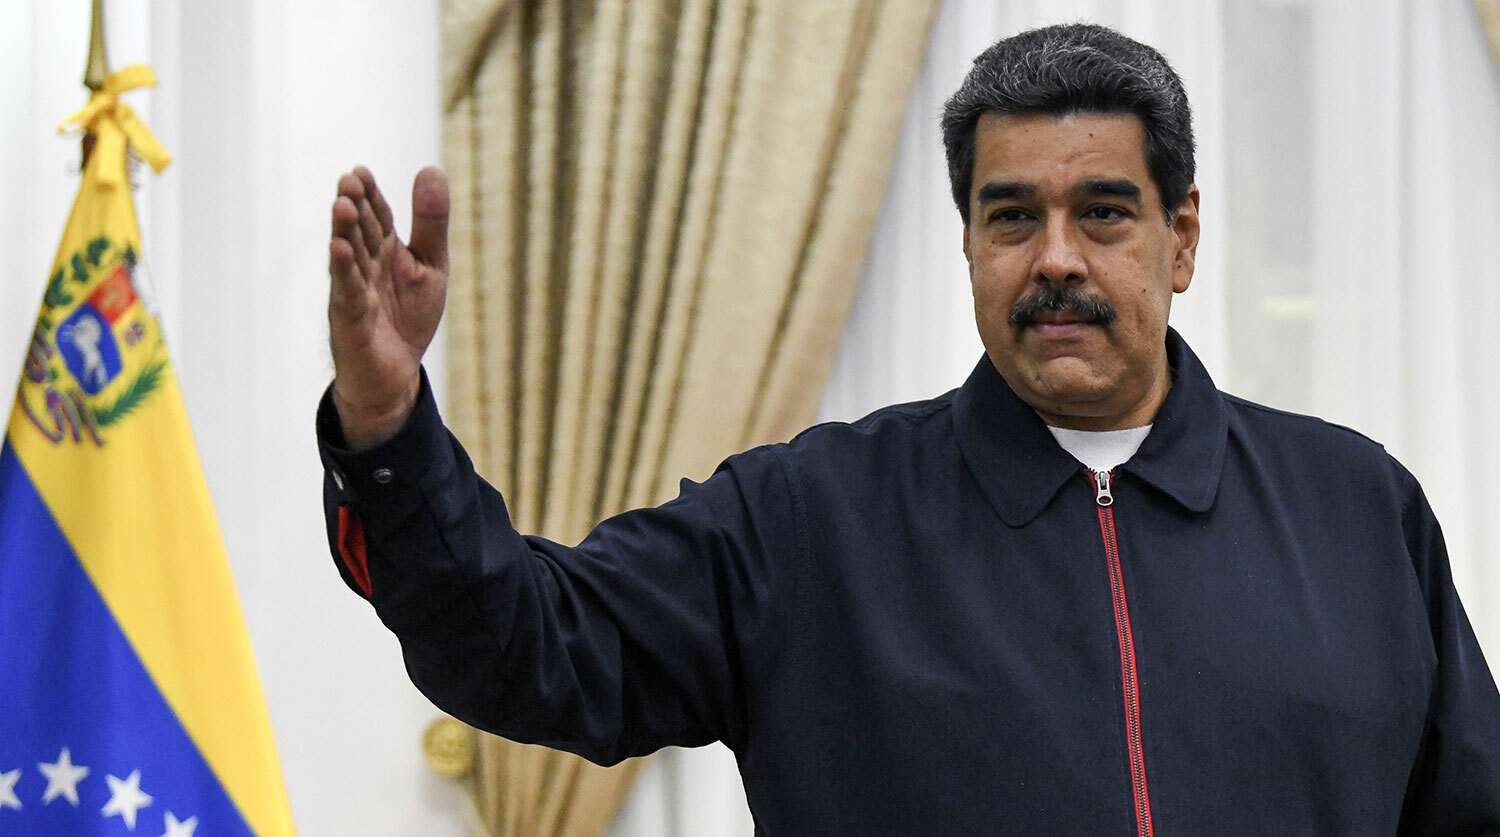 Мадуро заявил о контракте на поставку 10 млн доз вакцины «Спутник V» в Венесуэлу